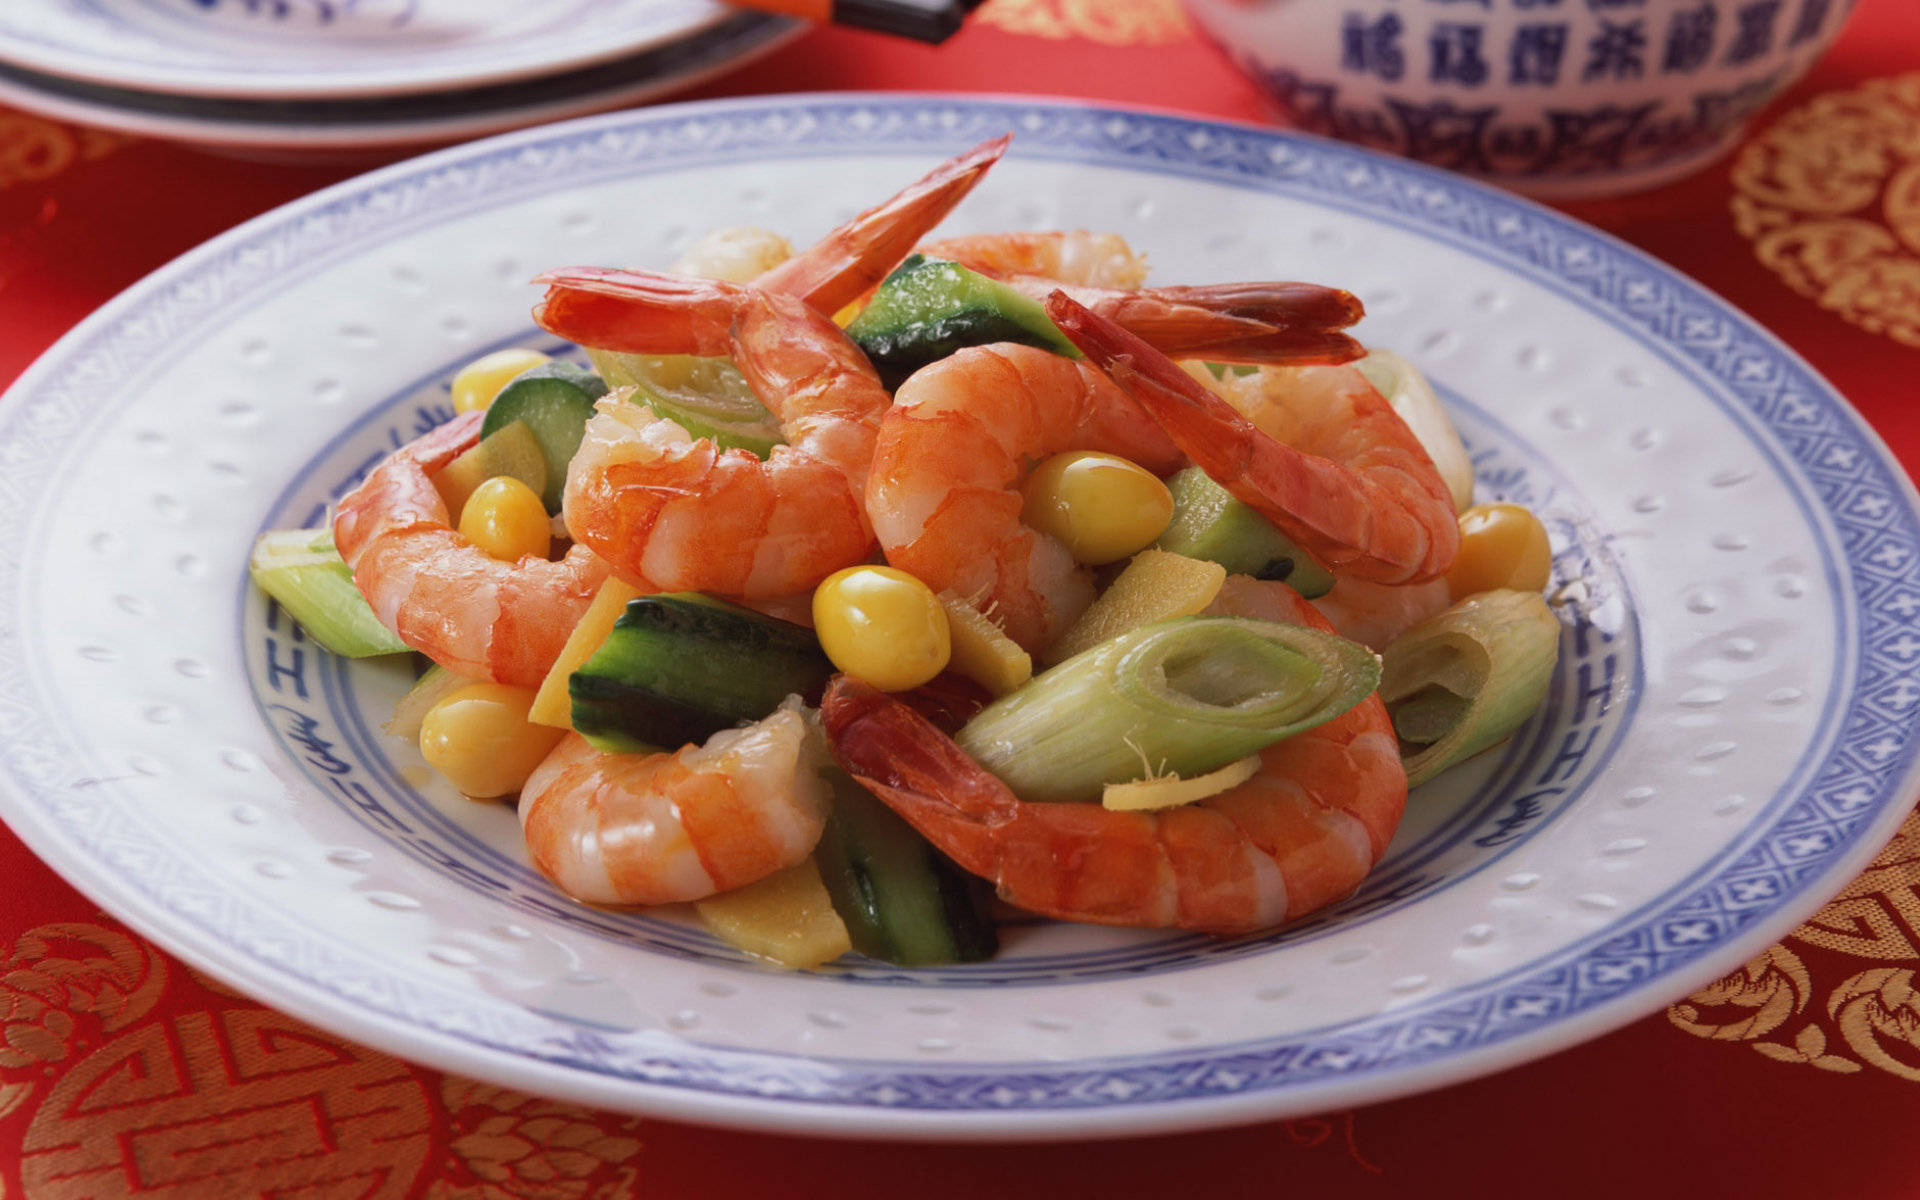 4k Food Shrimp And Vegetable Plate Wallpaper